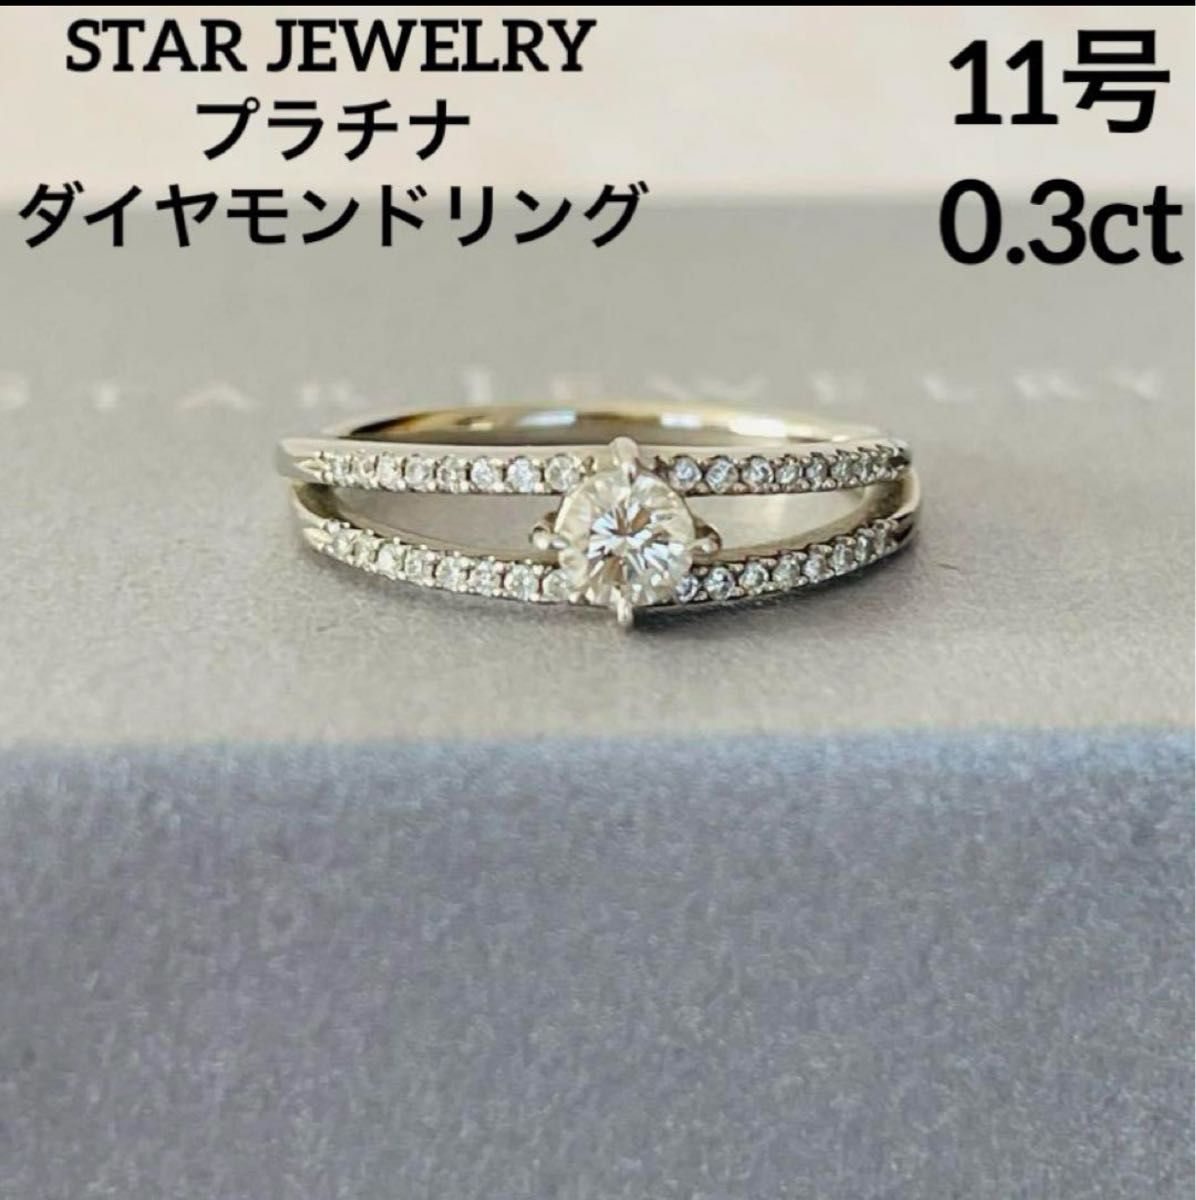 スタージュエリープラチナリングSTAR JEWELRY 指輪 11号 ダイヤモンド